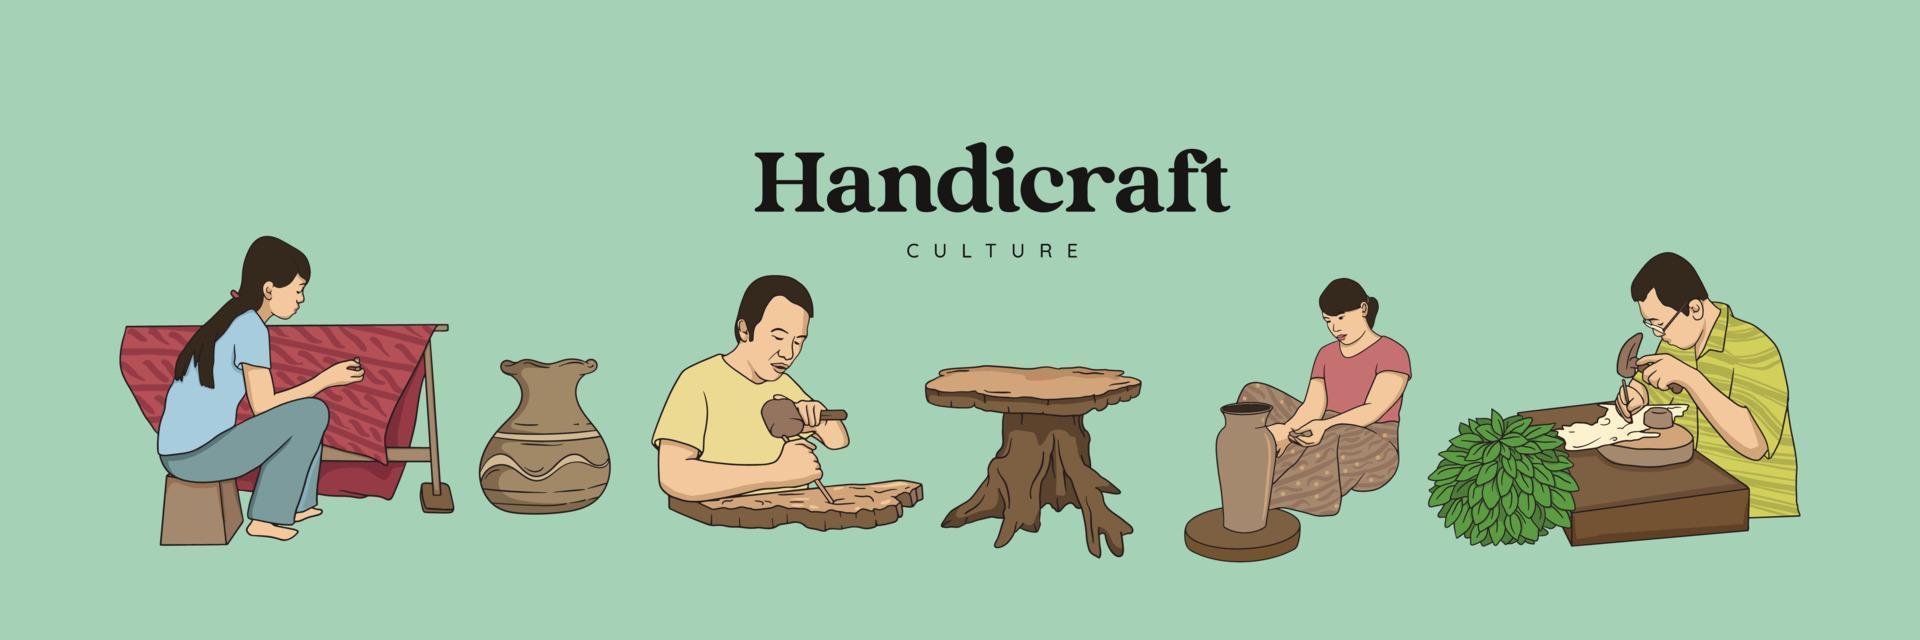 cultura tradicional de artesanato isolado mão desenhada. artesão de escultura, cerâmica e marionetes vetor